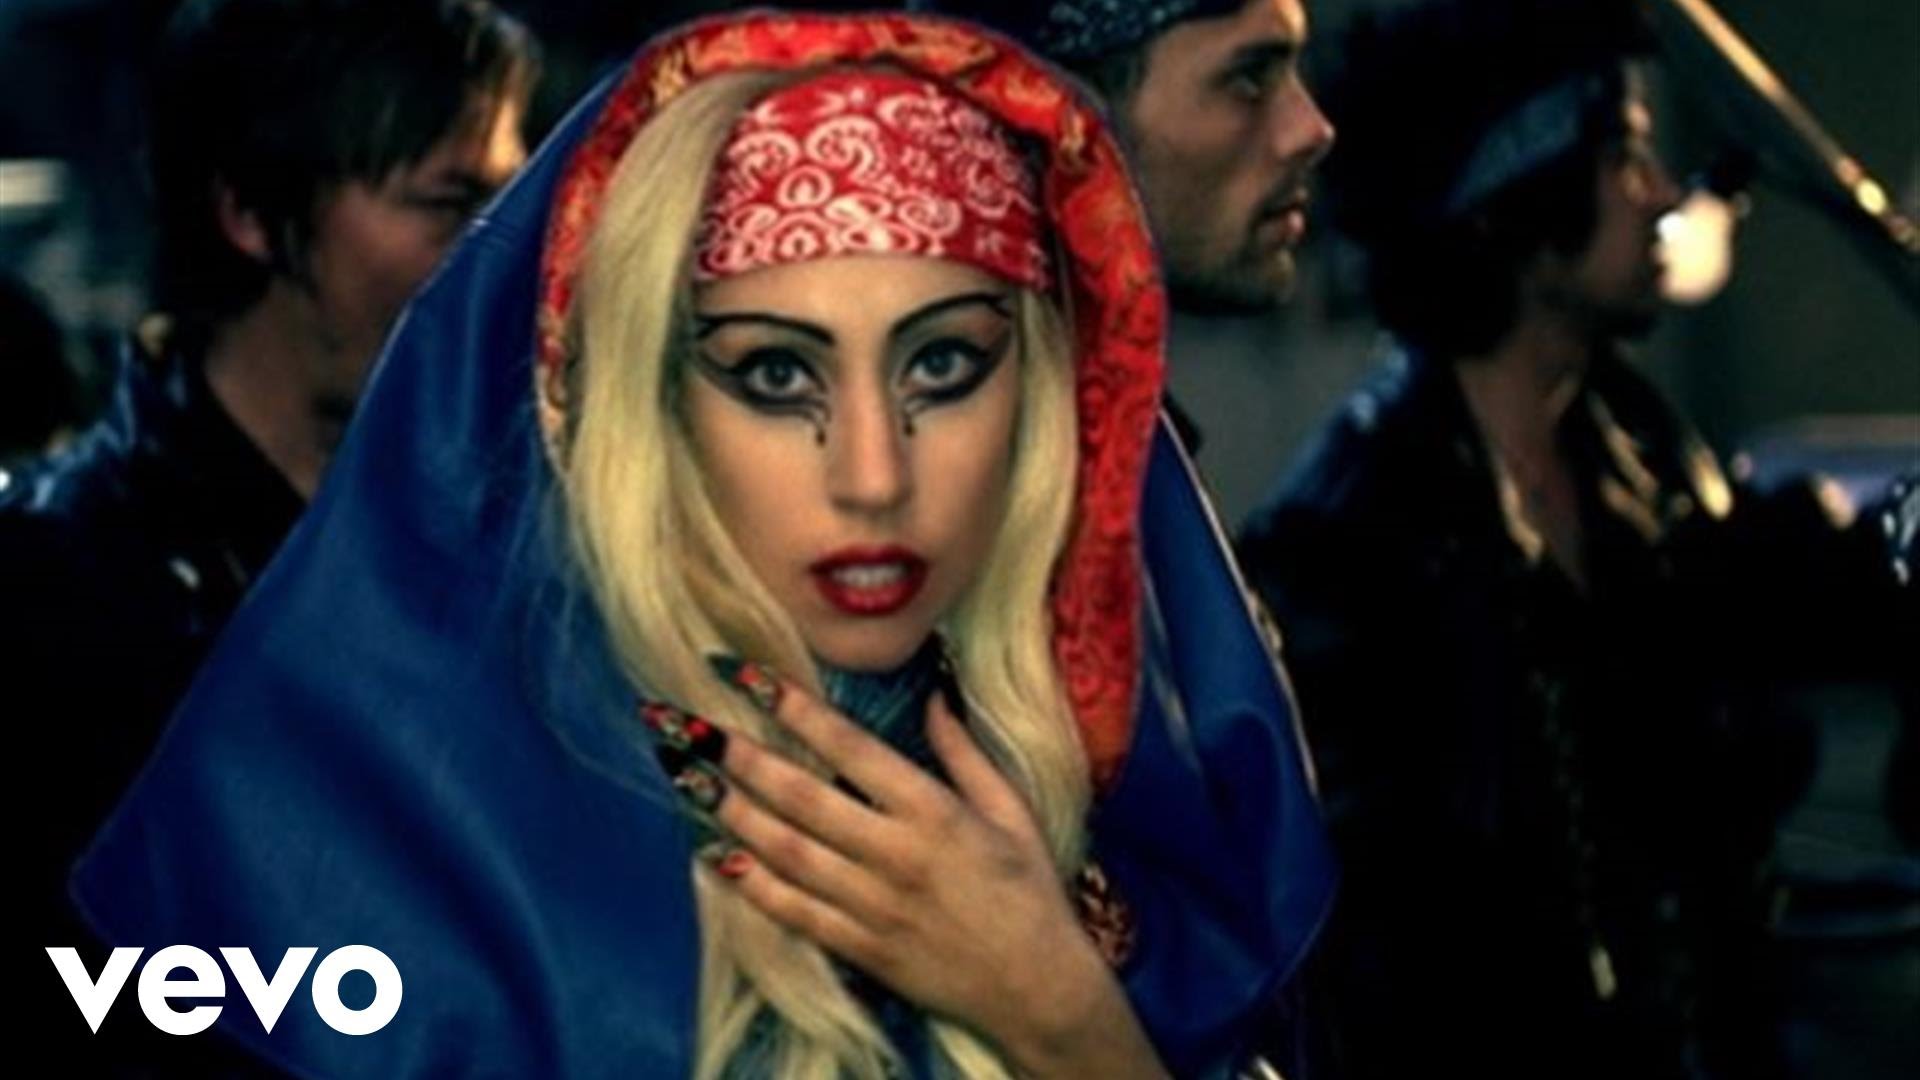 Lady Gaga - Judas - YouTube